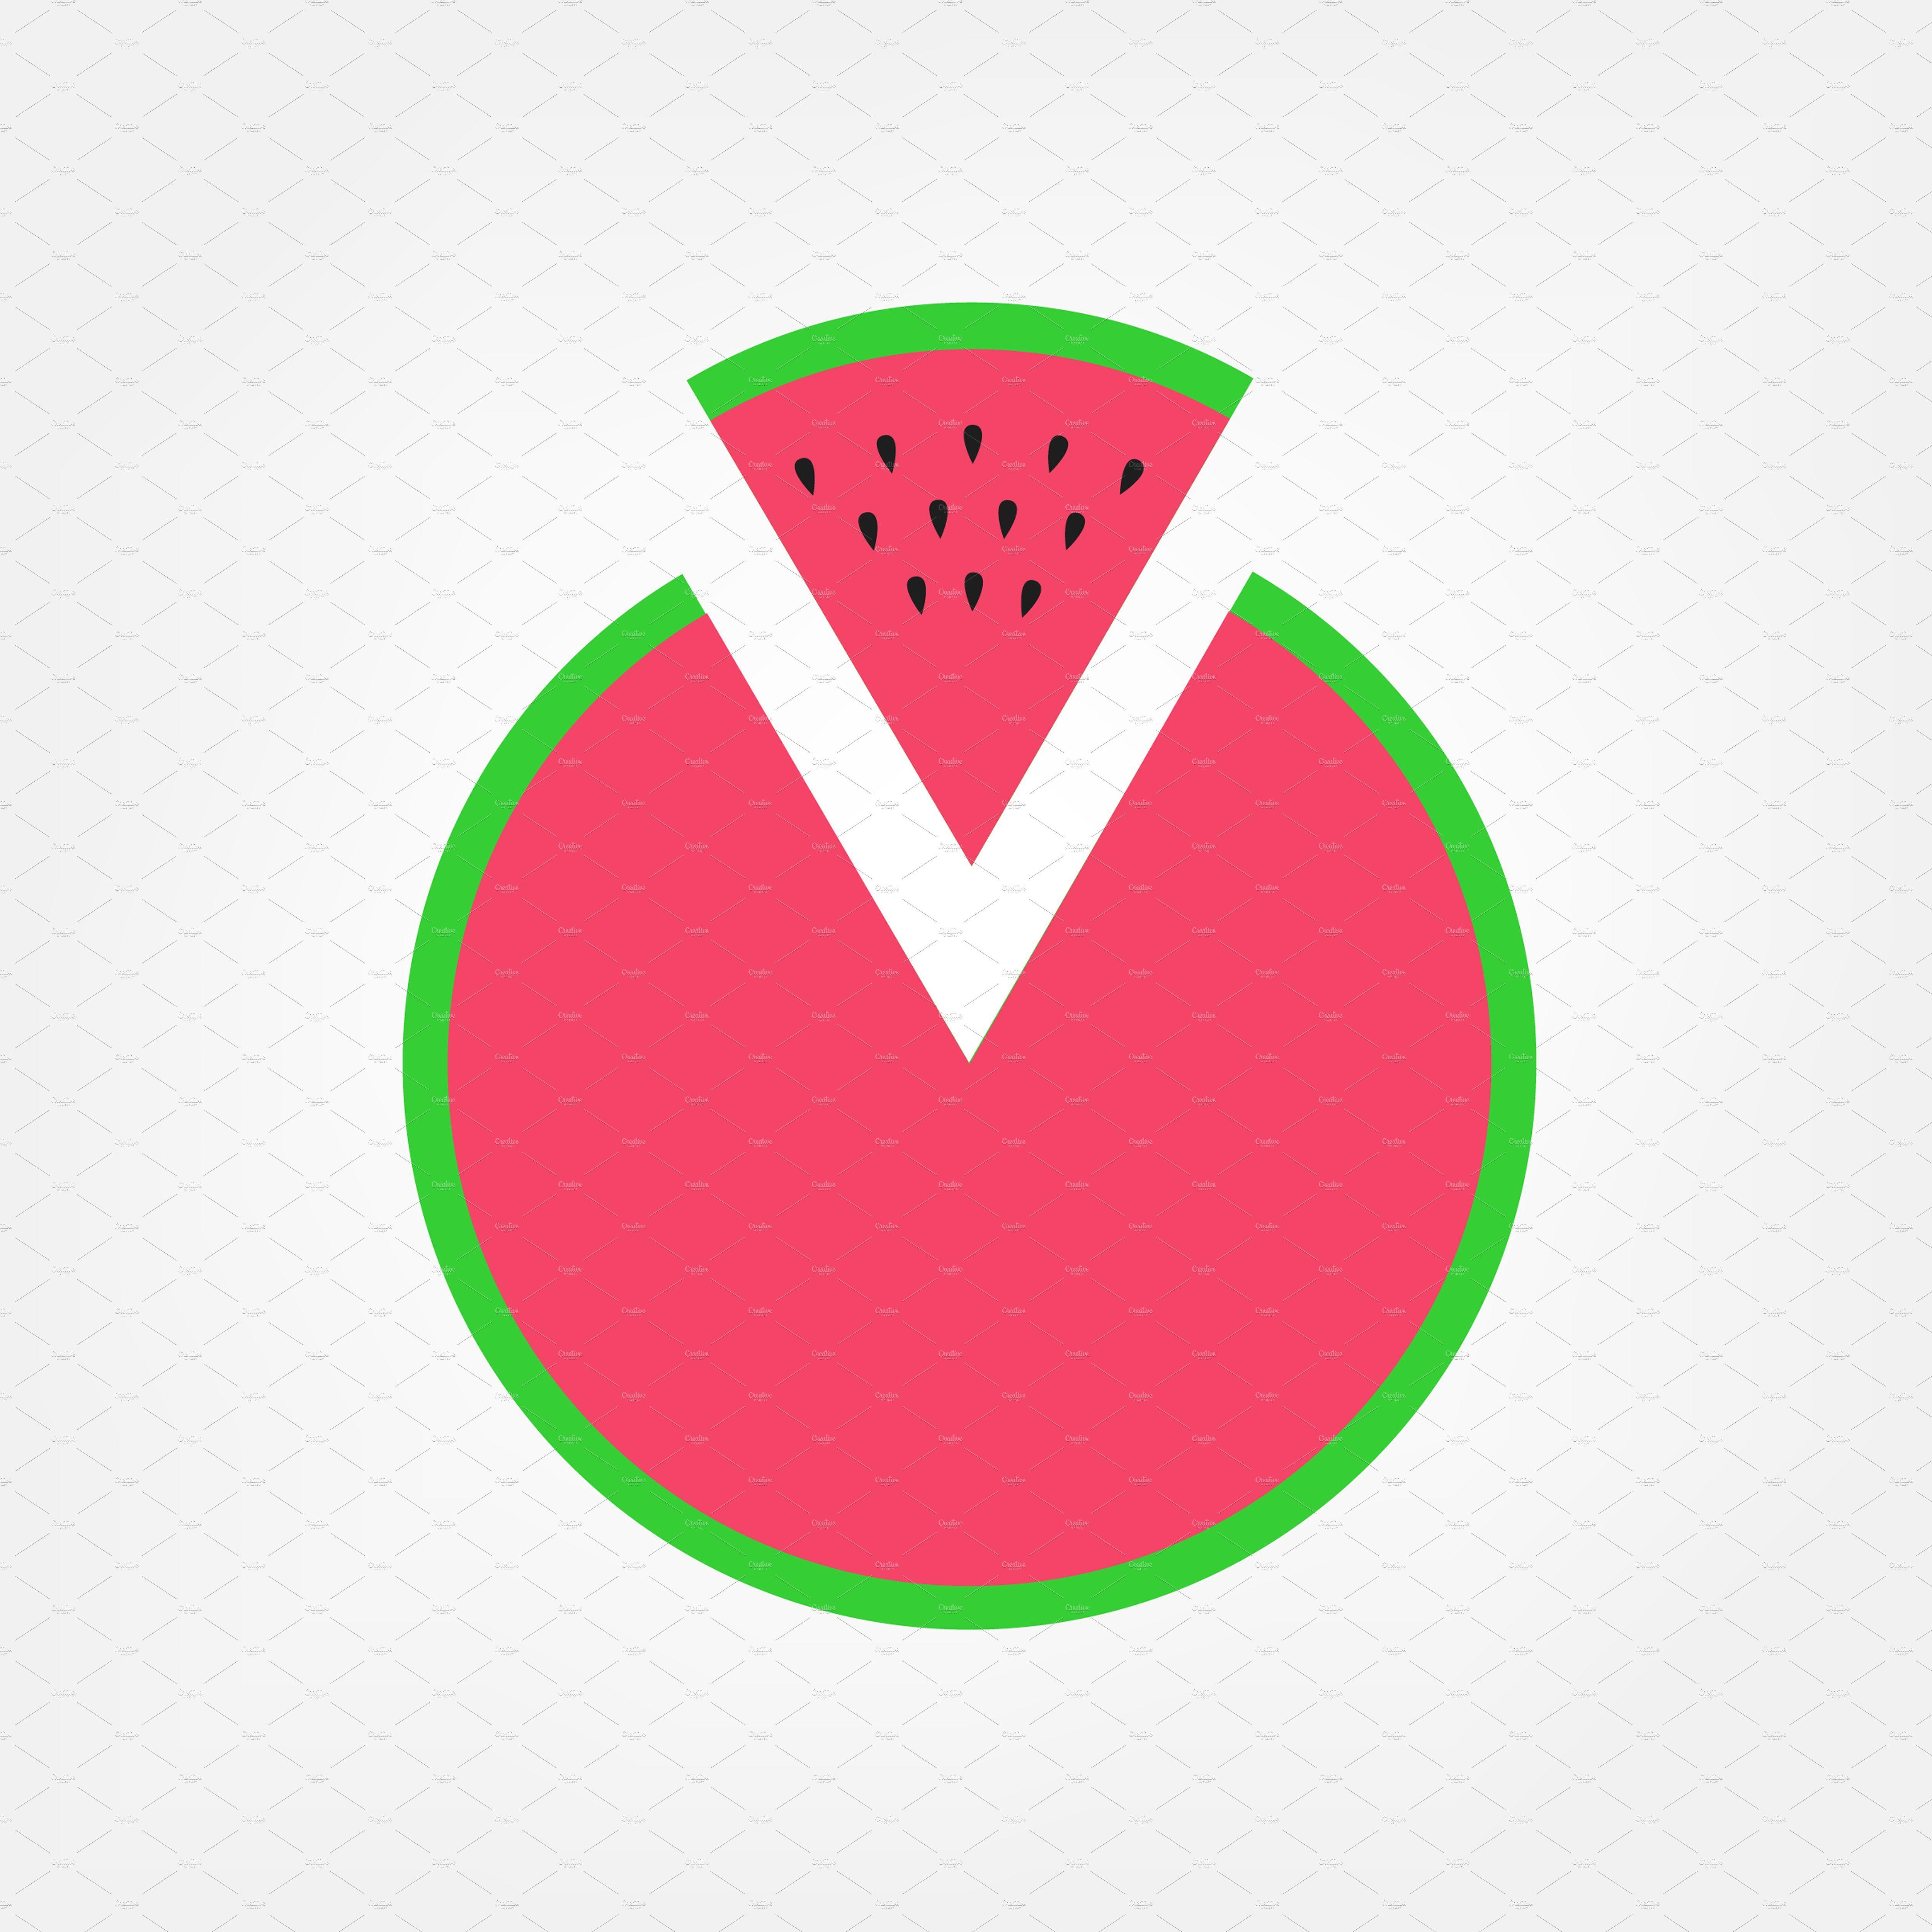 Watermelon Logo - Watermelon pizza logo Icon Creative Market